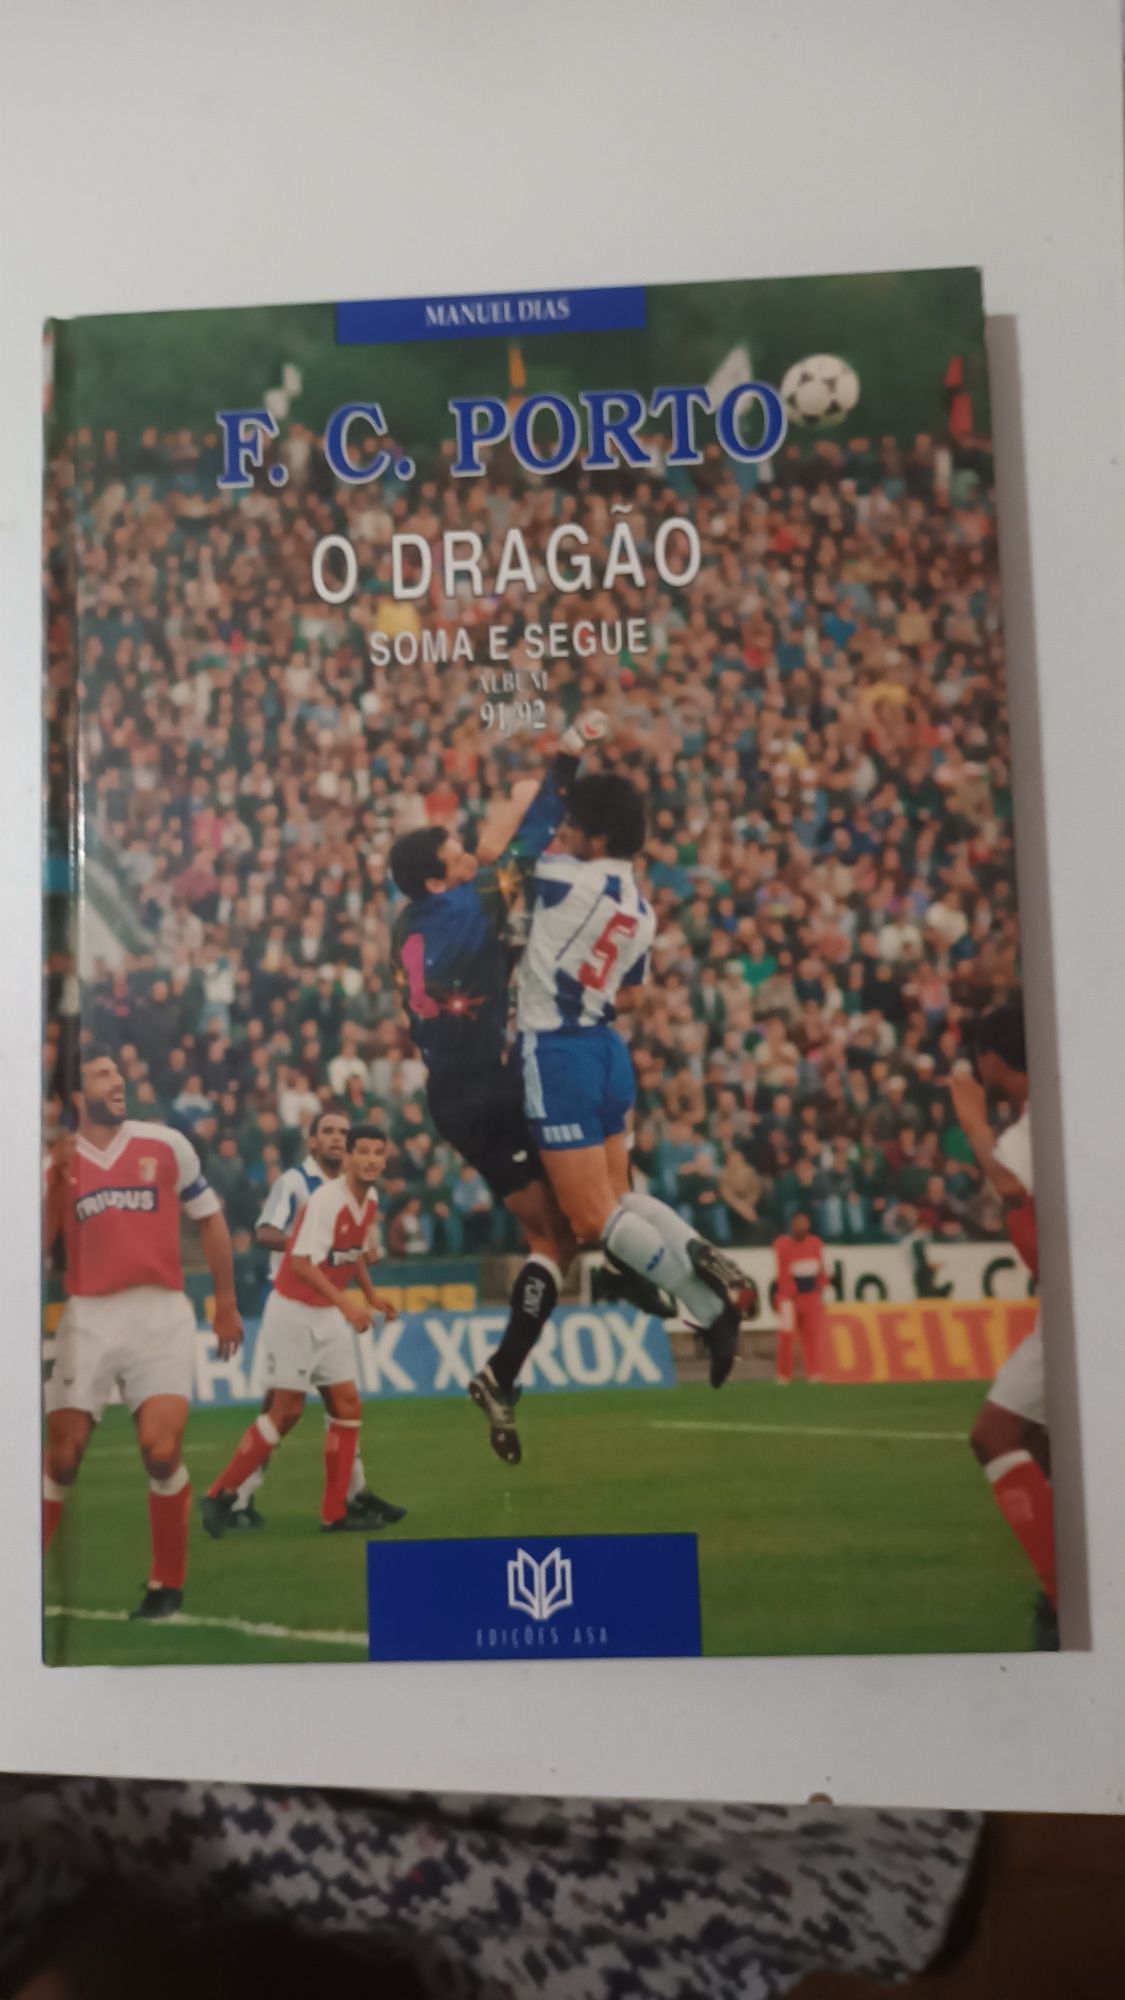 O dragão: soma e segue - F. C. Porto - Álbum 91/92